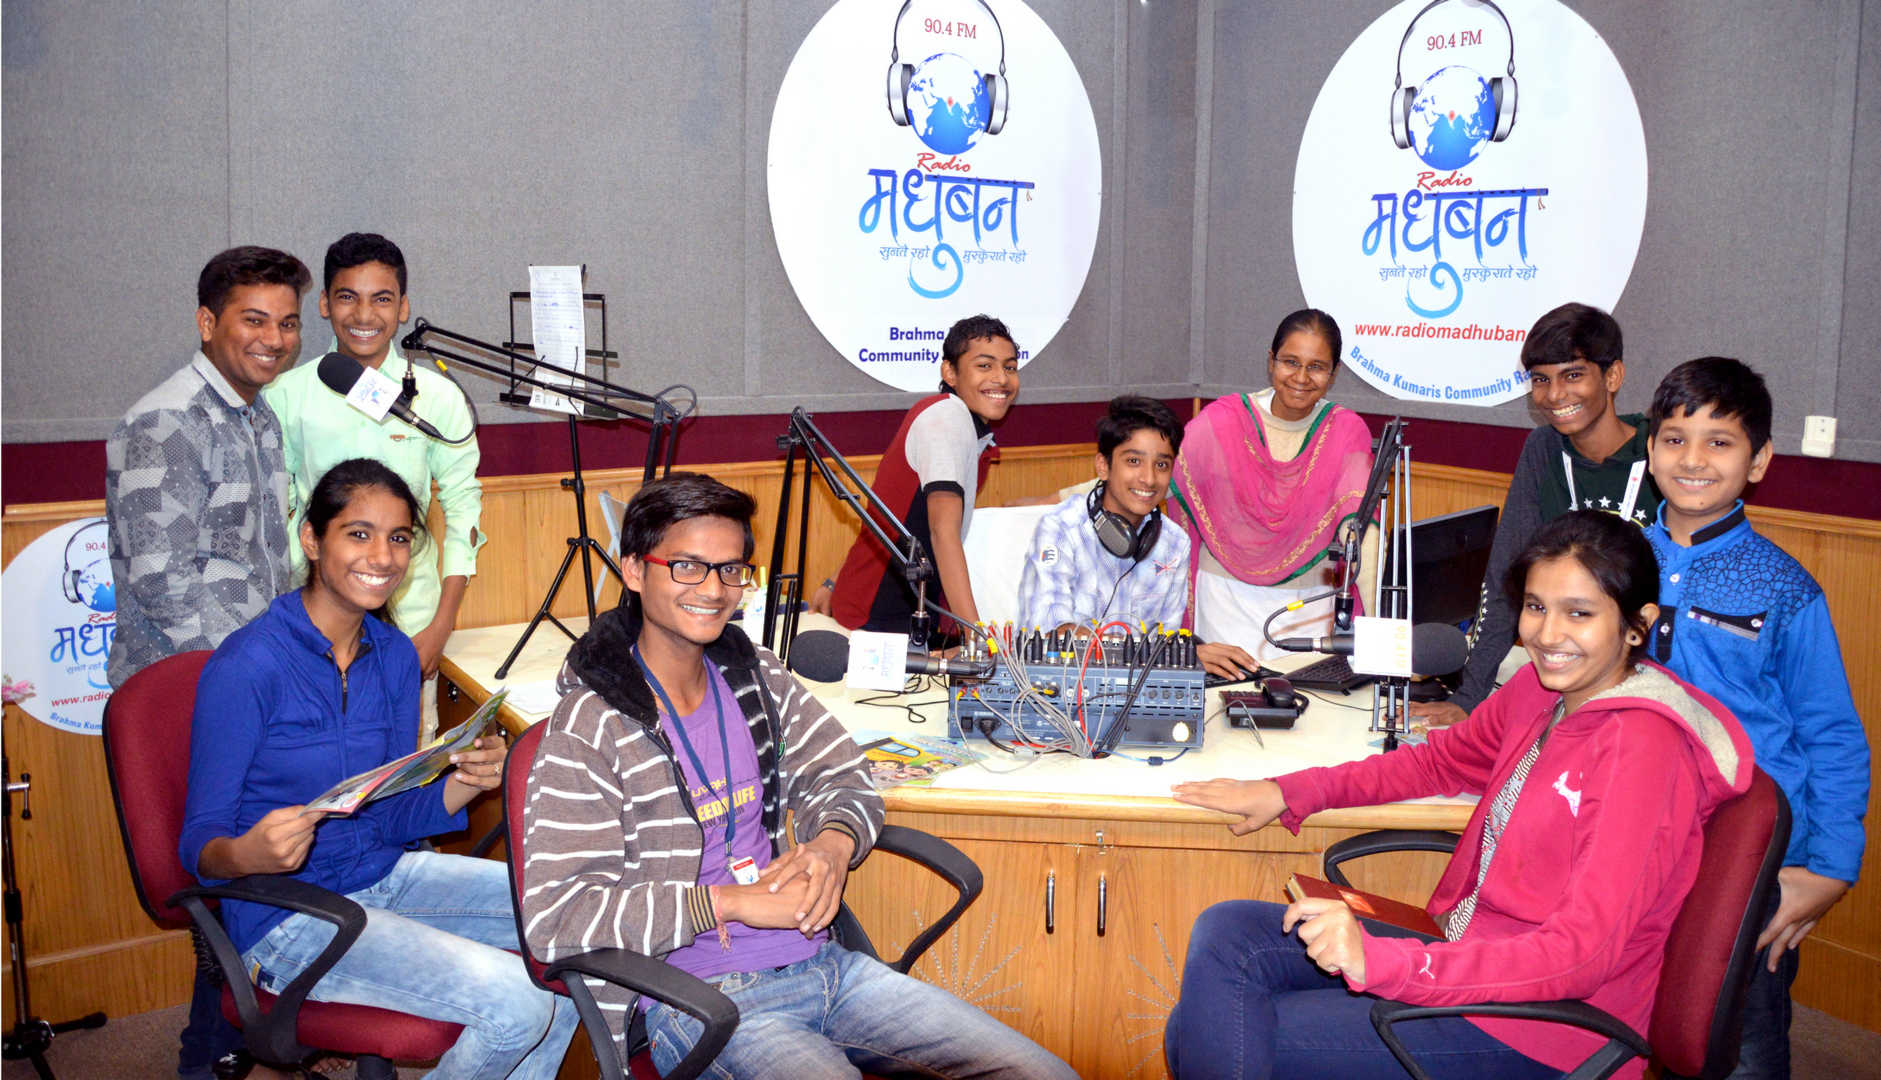 Madhuban radio team - 66